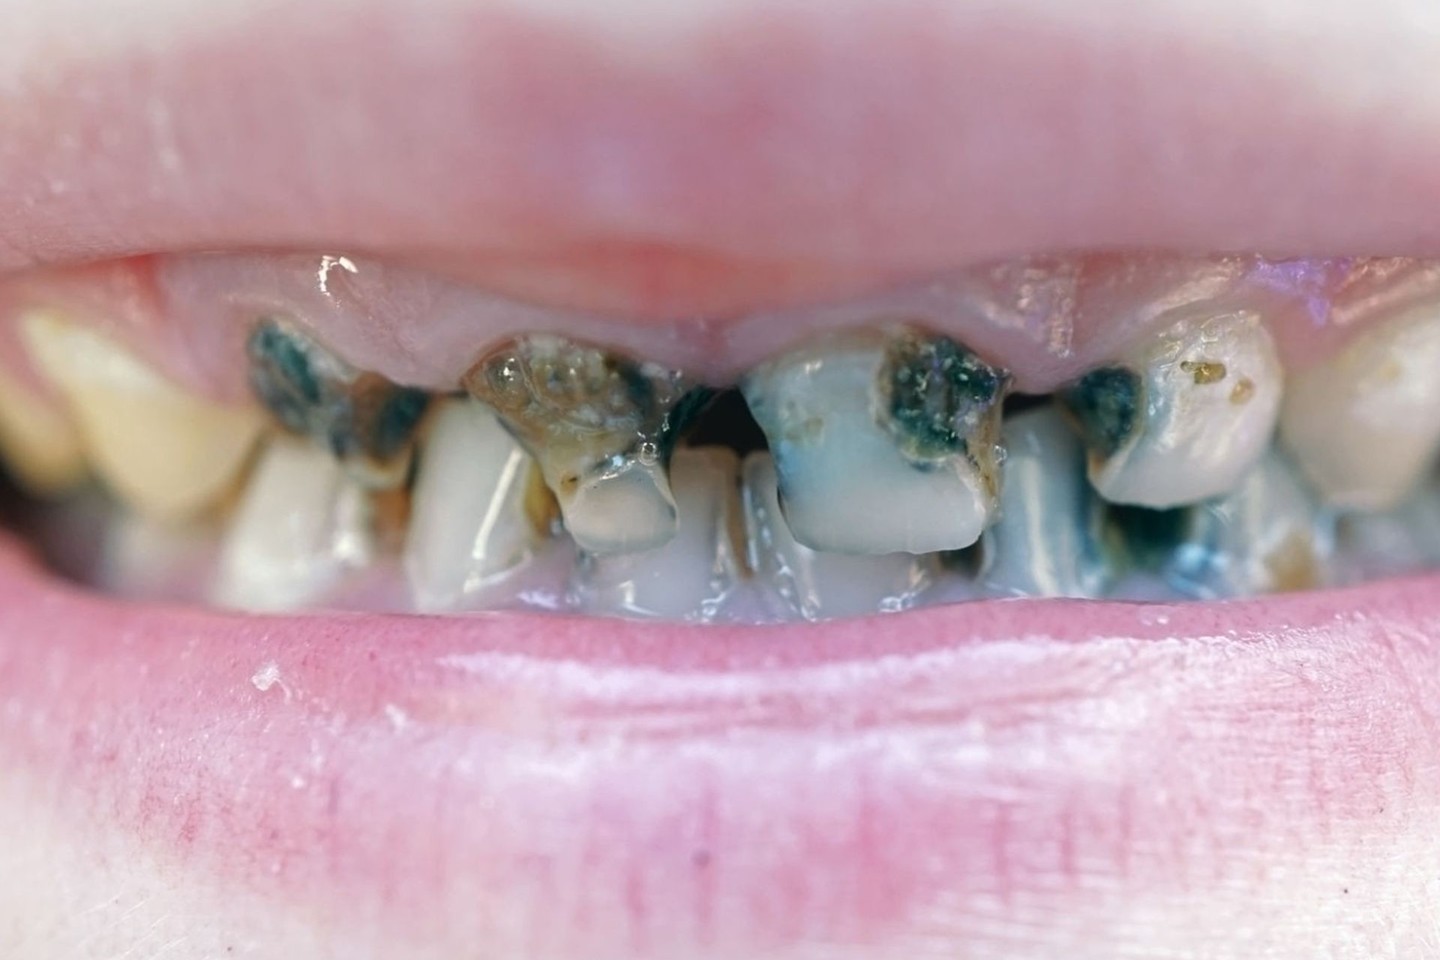 Vos vienerių metų vaikas, o priekiniai dantys jau pažeisti ėduonies, likusios tik šaknys. Dviejų metų vaiko dantys apsinešę ir pajuodę.<br>123rf nuotr.